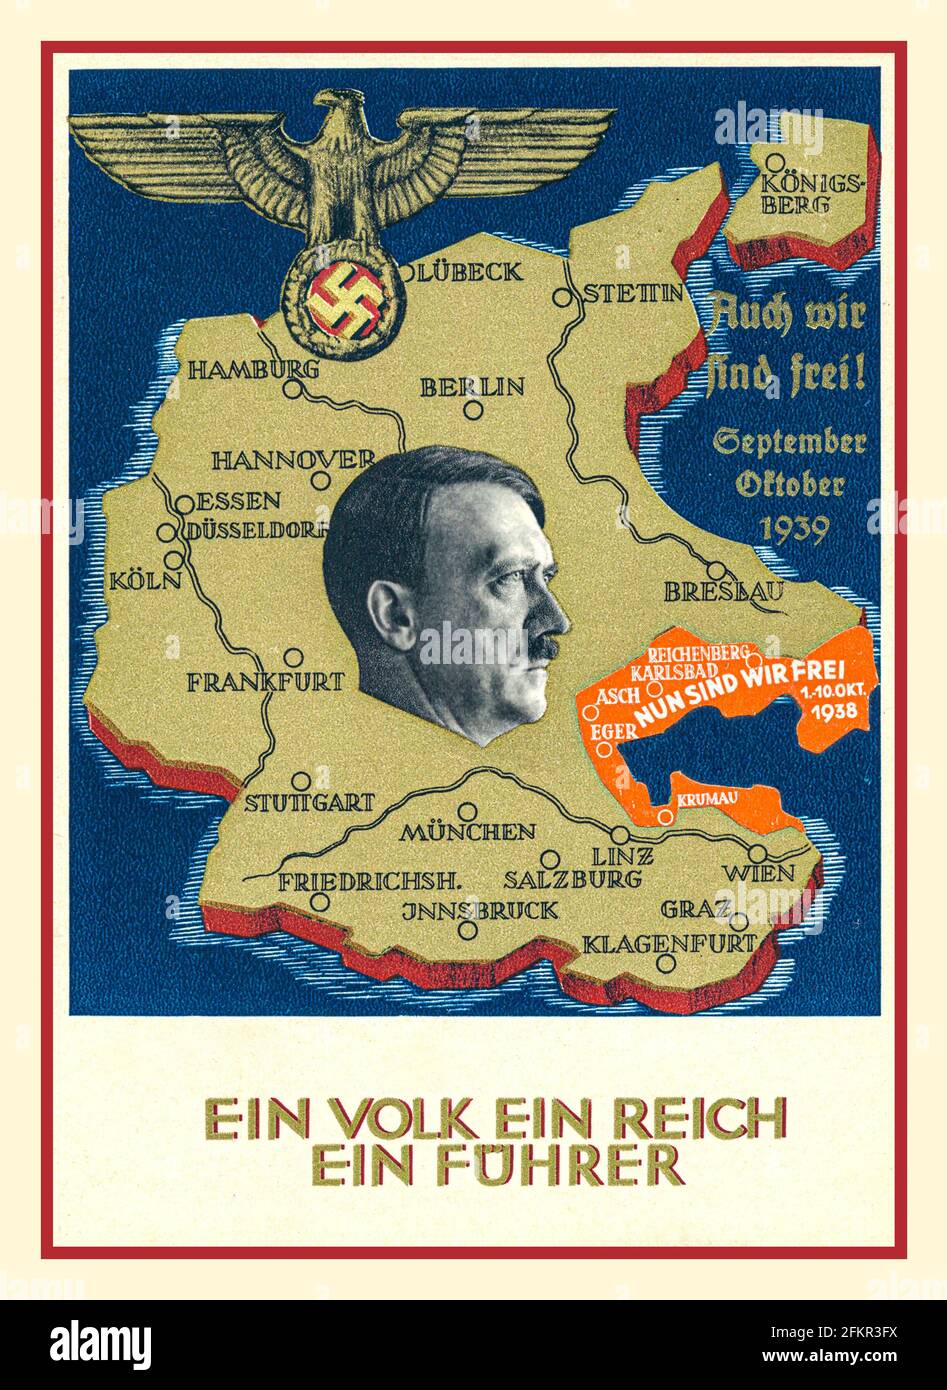 1930 'nazista Propaganda 'Anschluss' poster mappa della Germania con Nazi Eagle, Swastika e Adolf Hitler. "Ein VOLK ein REICH ein Führer" "One People..One Reich..One Führer" l'Austria è stata annessa senza spargimento di sangue nella Germania nazista maggiore il 13 marzo 1938 sind wir frei 'ora siamo liberi: Foto Stock